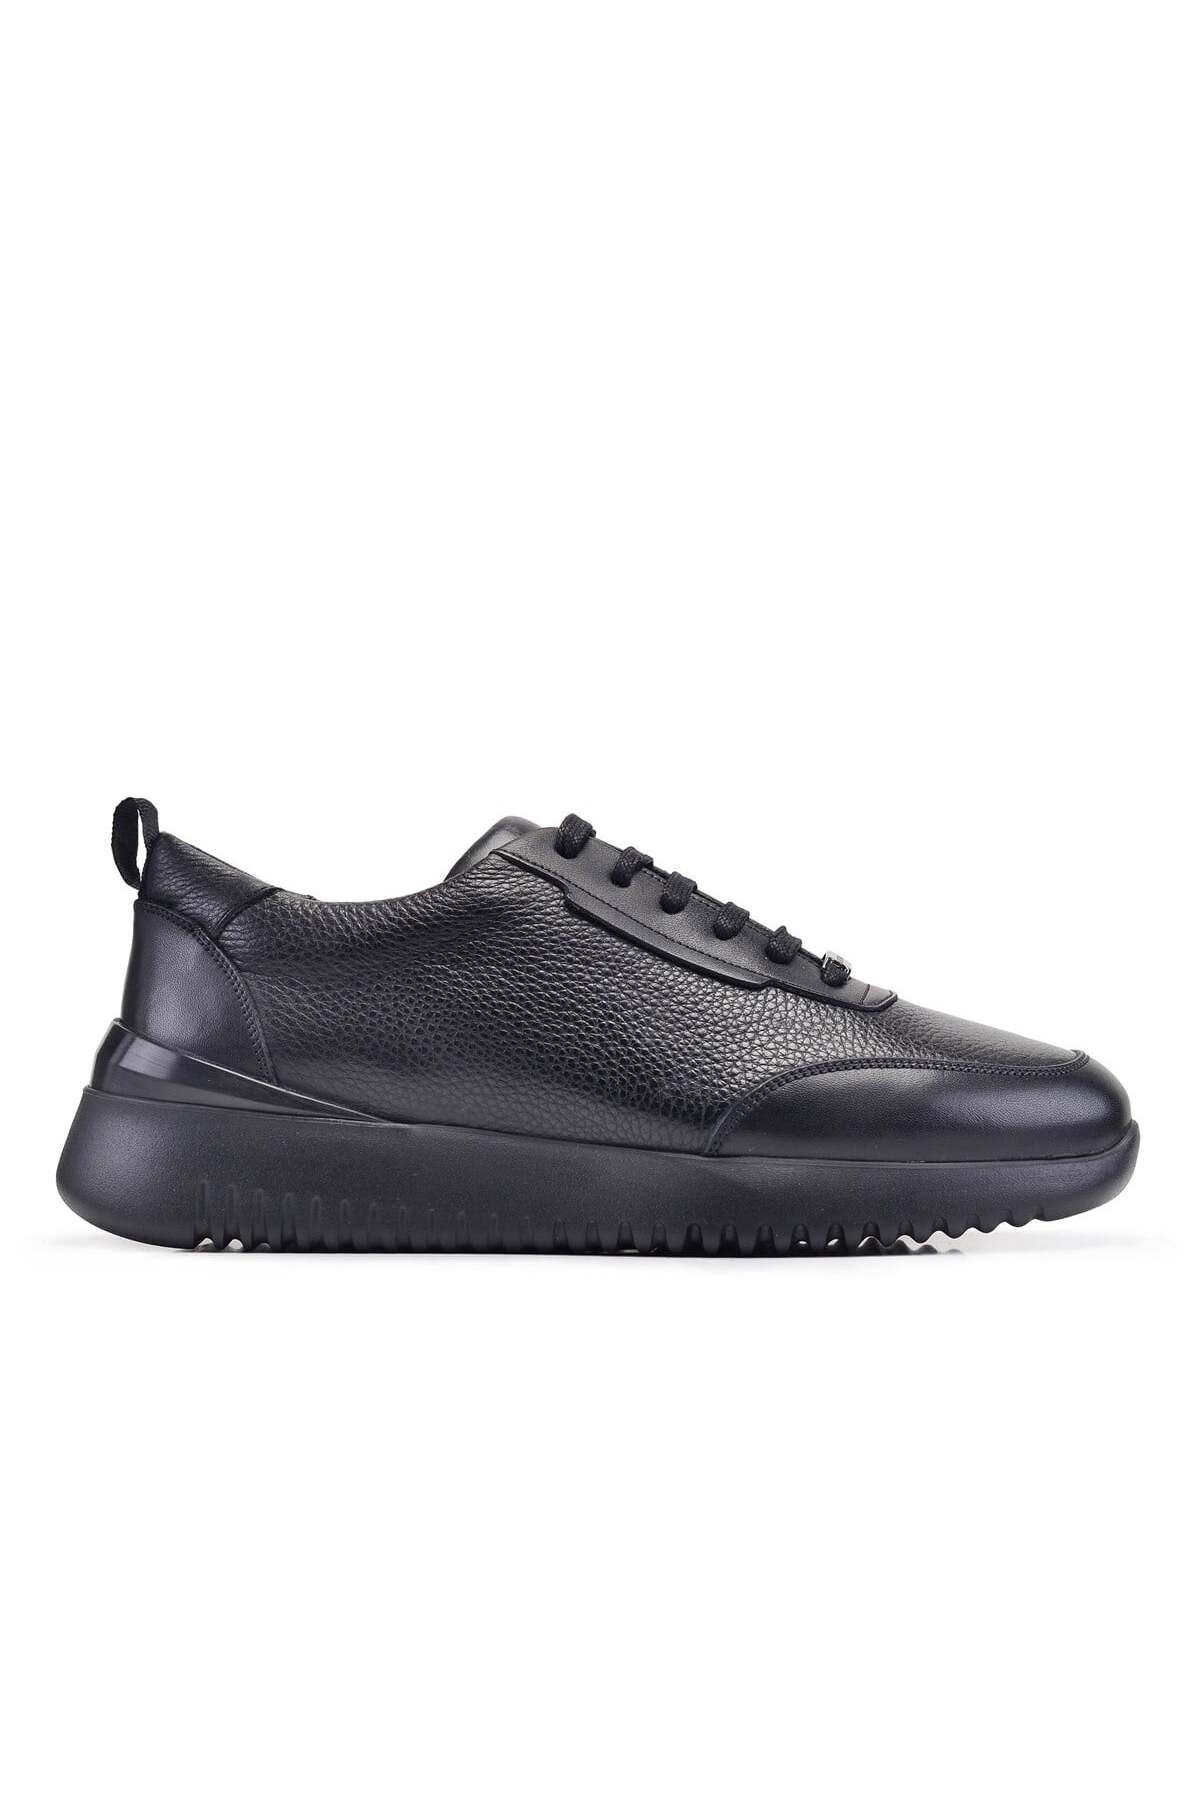 Nevzat Onay Siyah Bağcıklı Sneaker Erkek Ayakkabı -12416-